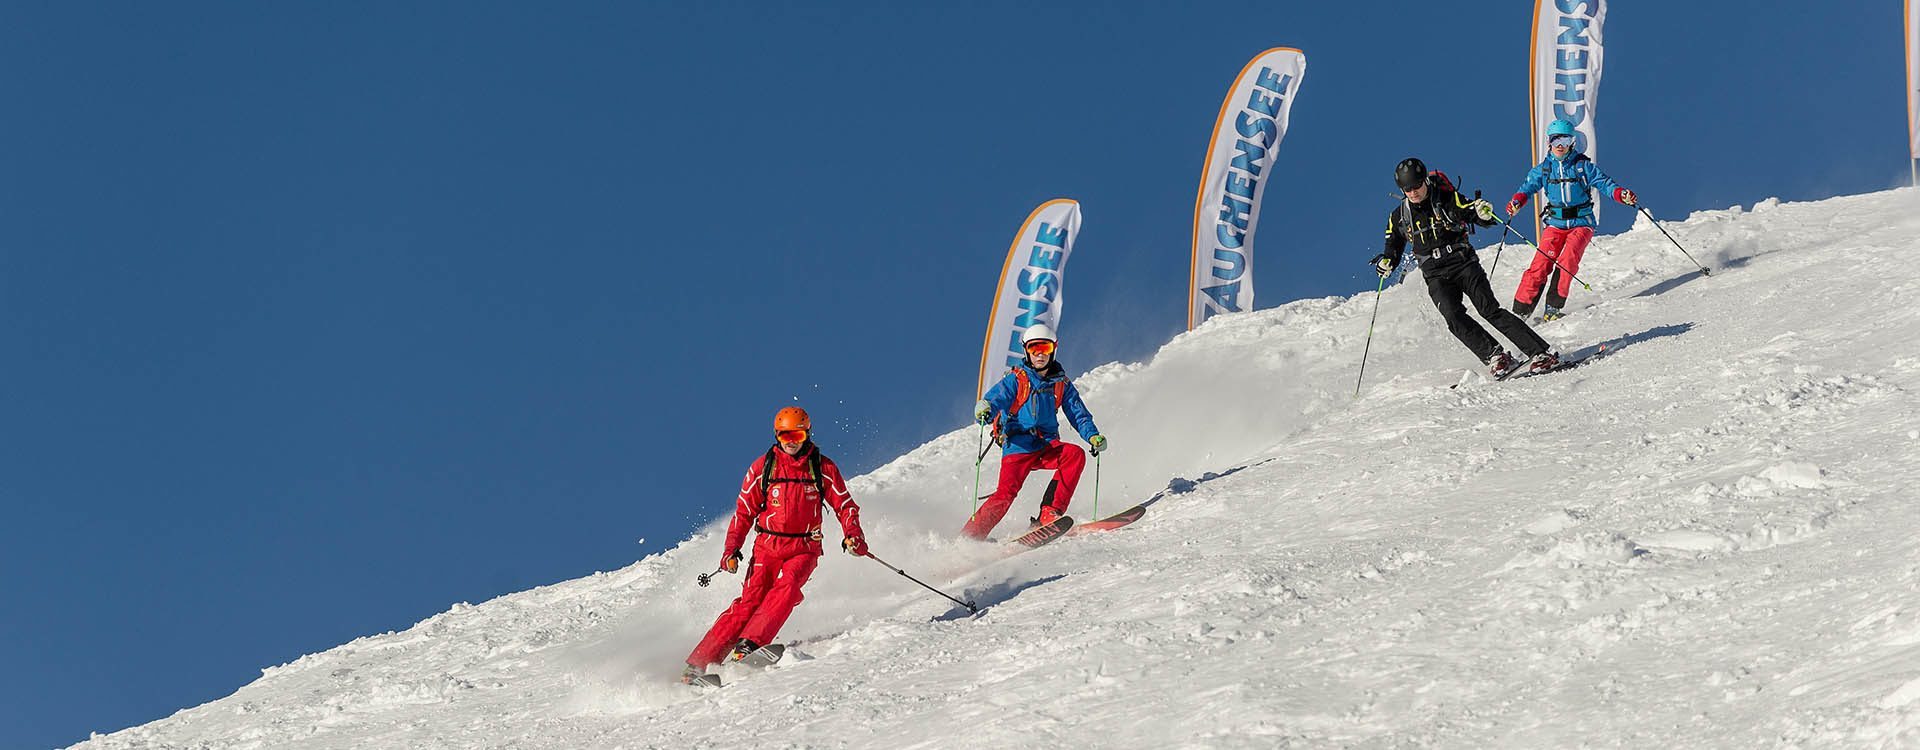 Erwachsenen-Skikurse – Anfänger & Fortgeschrittene – Schischule Top Alpin in Altenmarkt-Zauchensee, Ski amadé